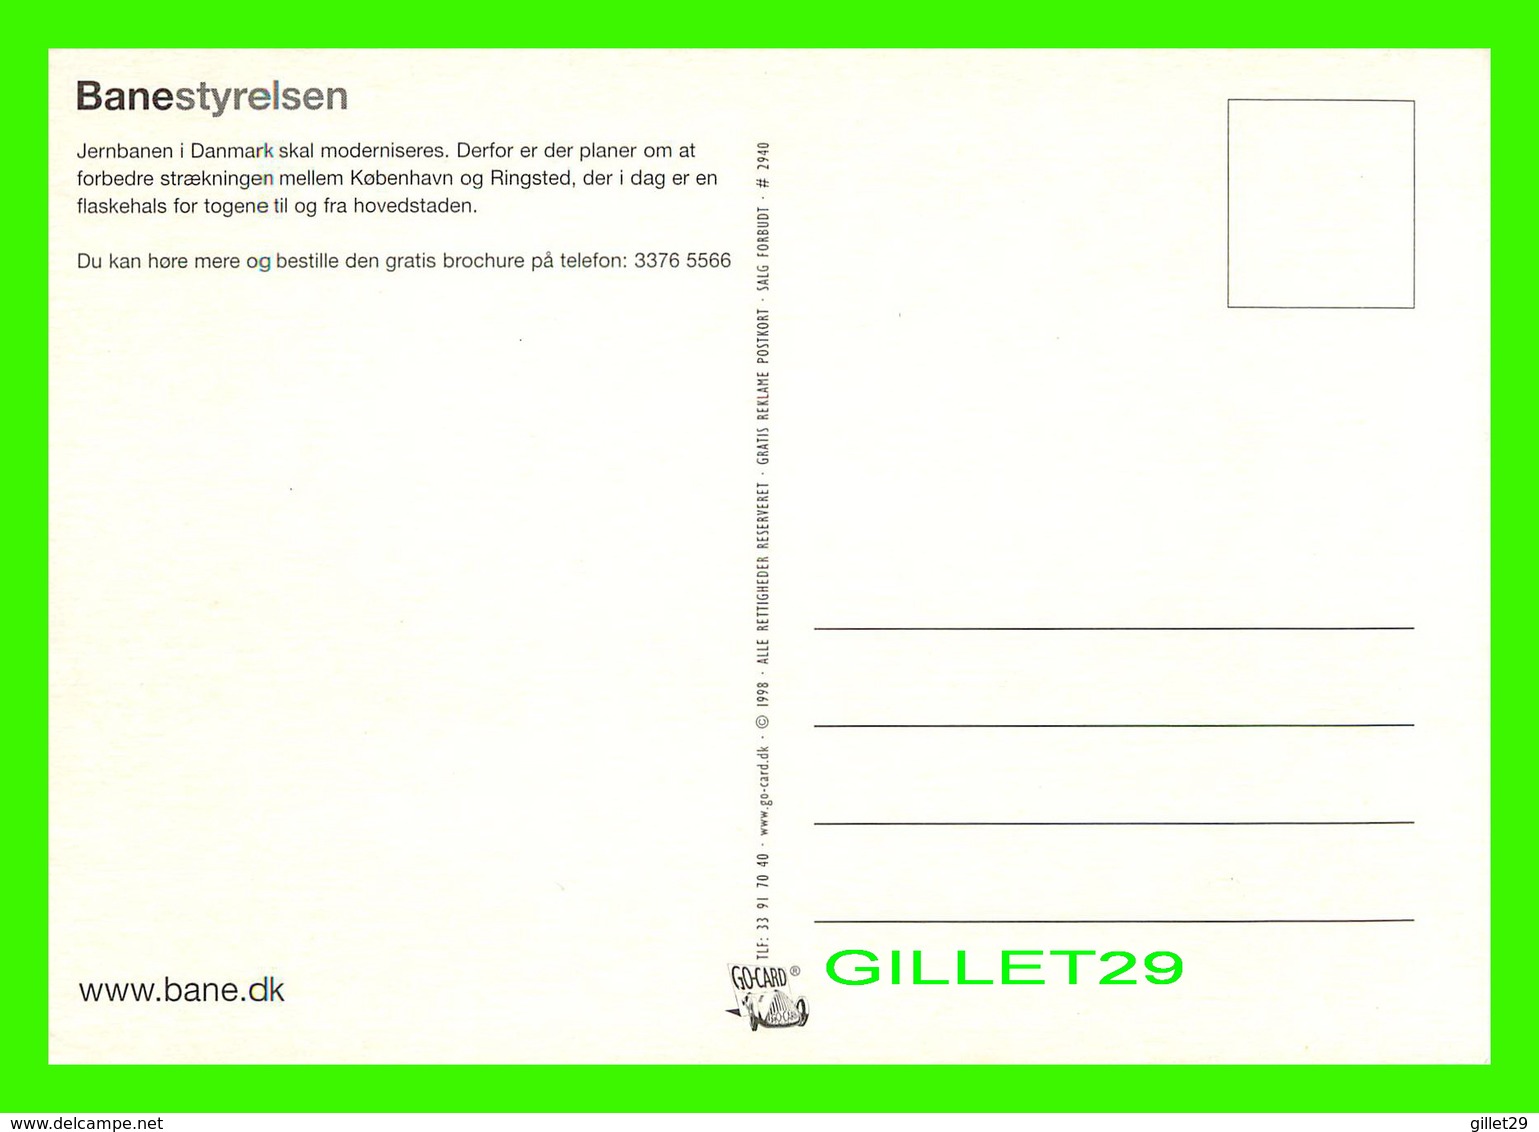 ADVERTISING, PUBLICITÉ - BEDRE BANNER, MEILLEUR BANQUE - BANESTYRELSEN - GO-CARD 1998 No 2940 - - Publicité